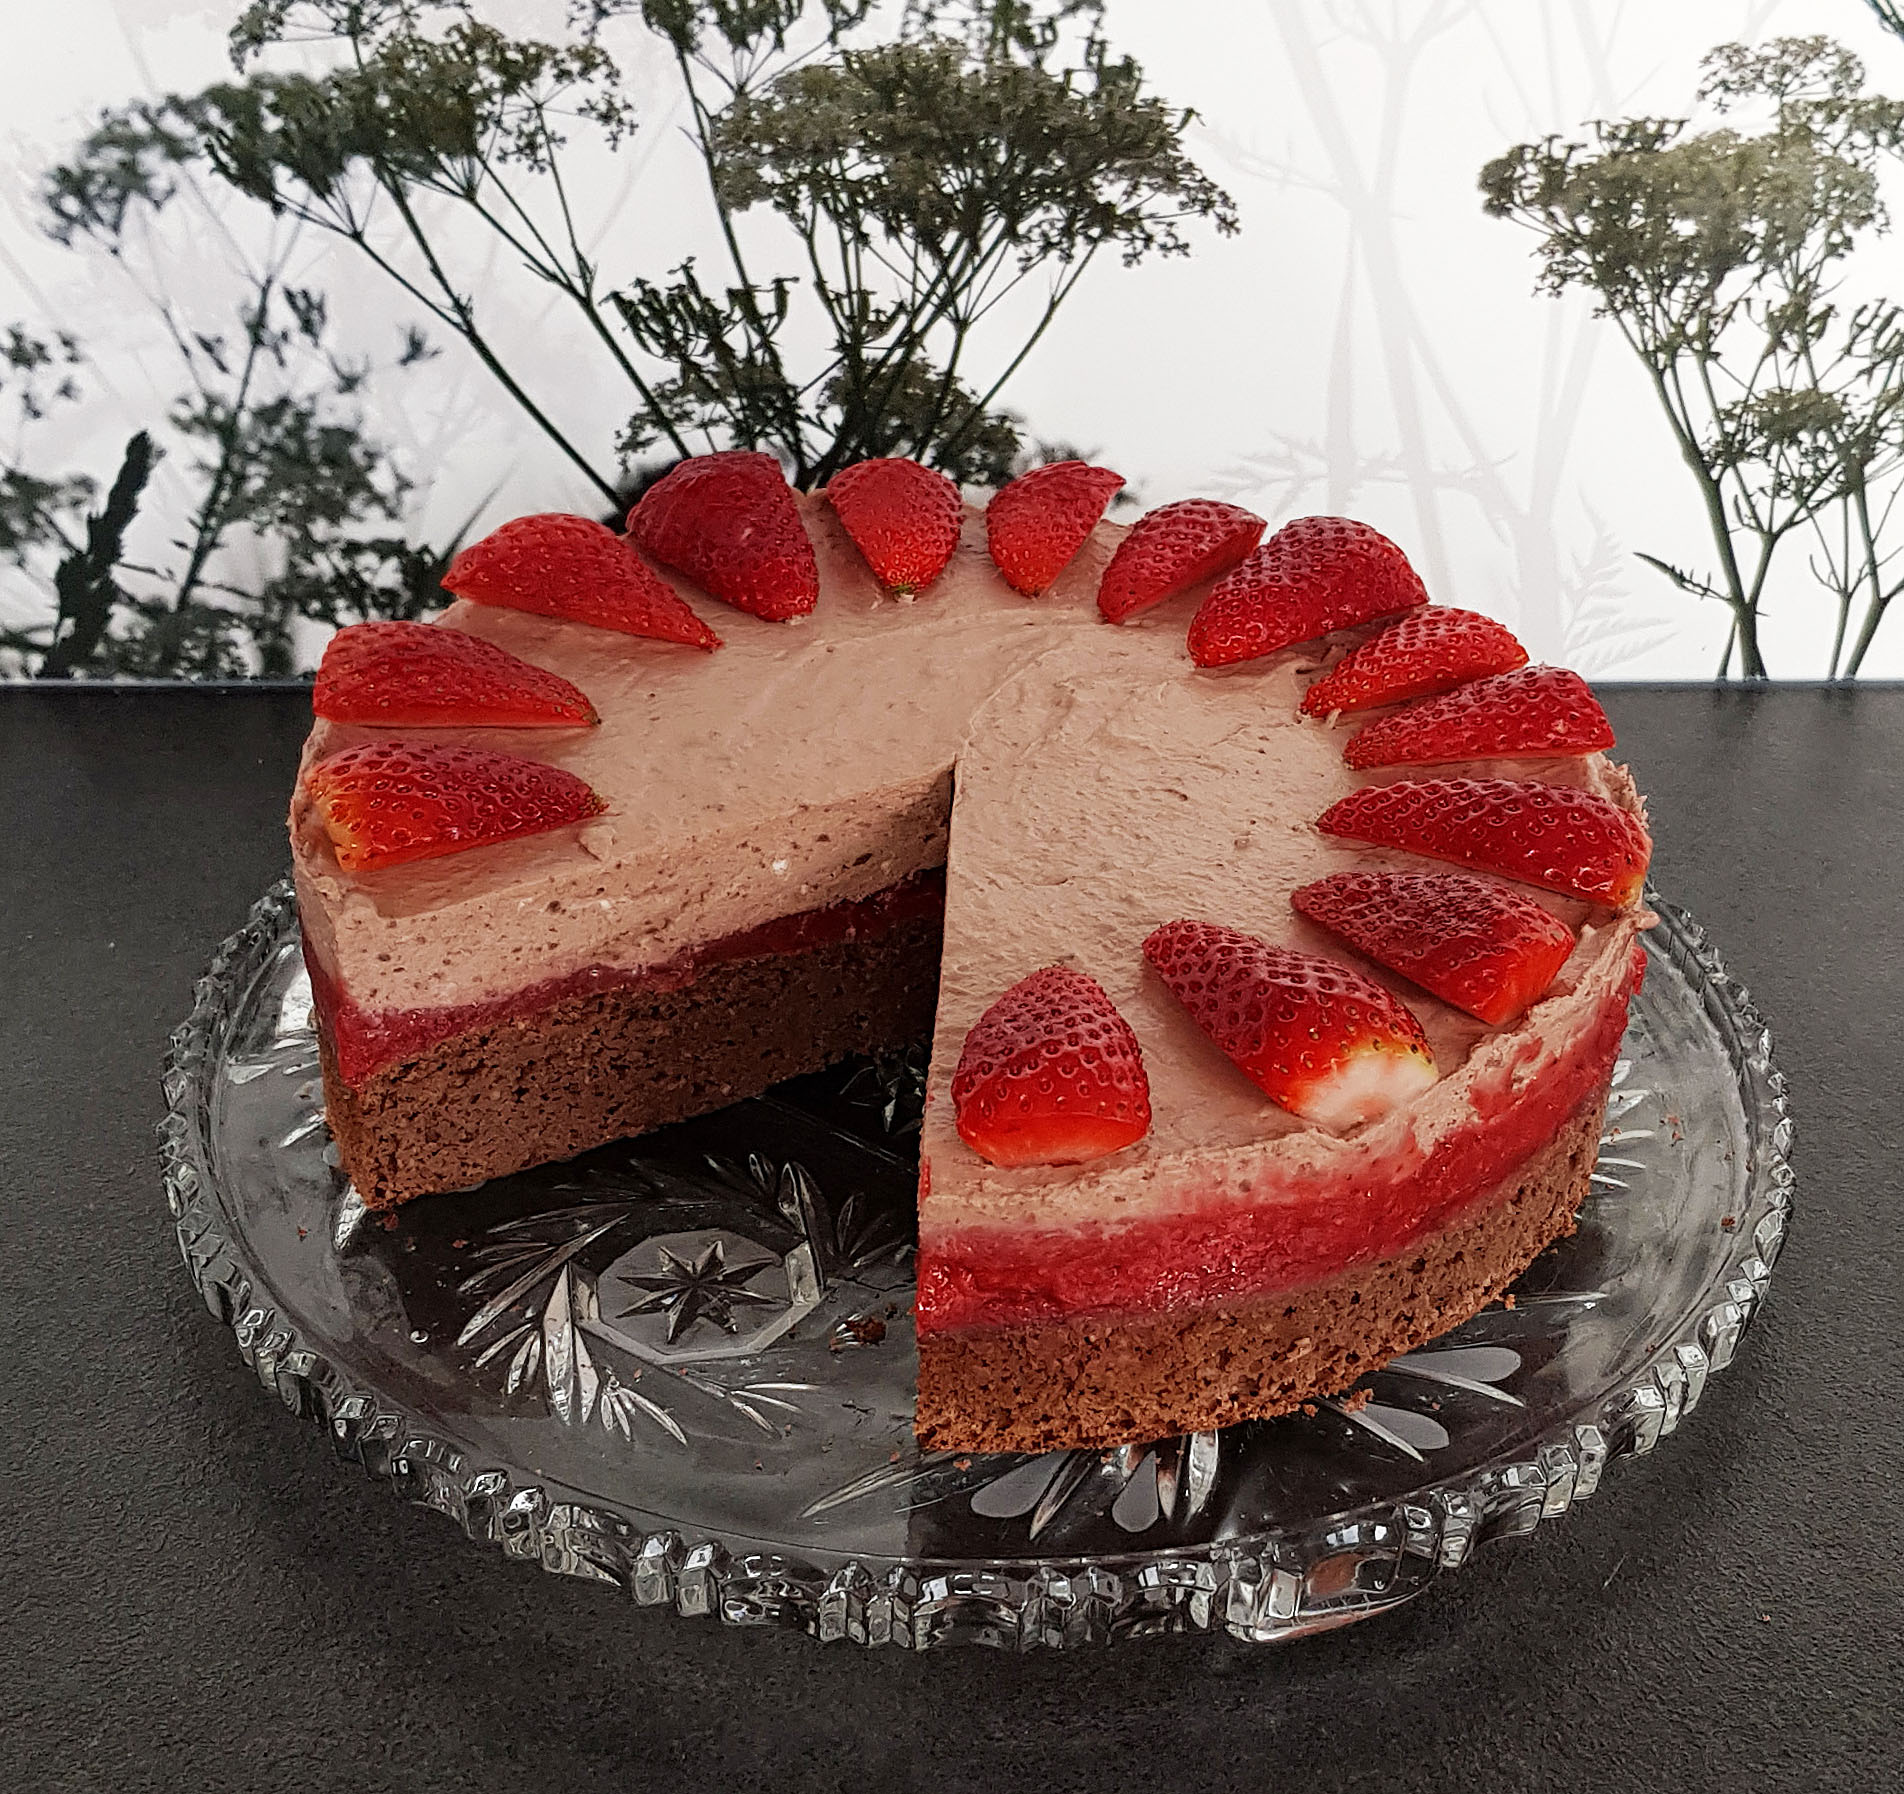 Schoko-Sahne-Torte mit Erdbeeren3 – Low Carb mit Genuss